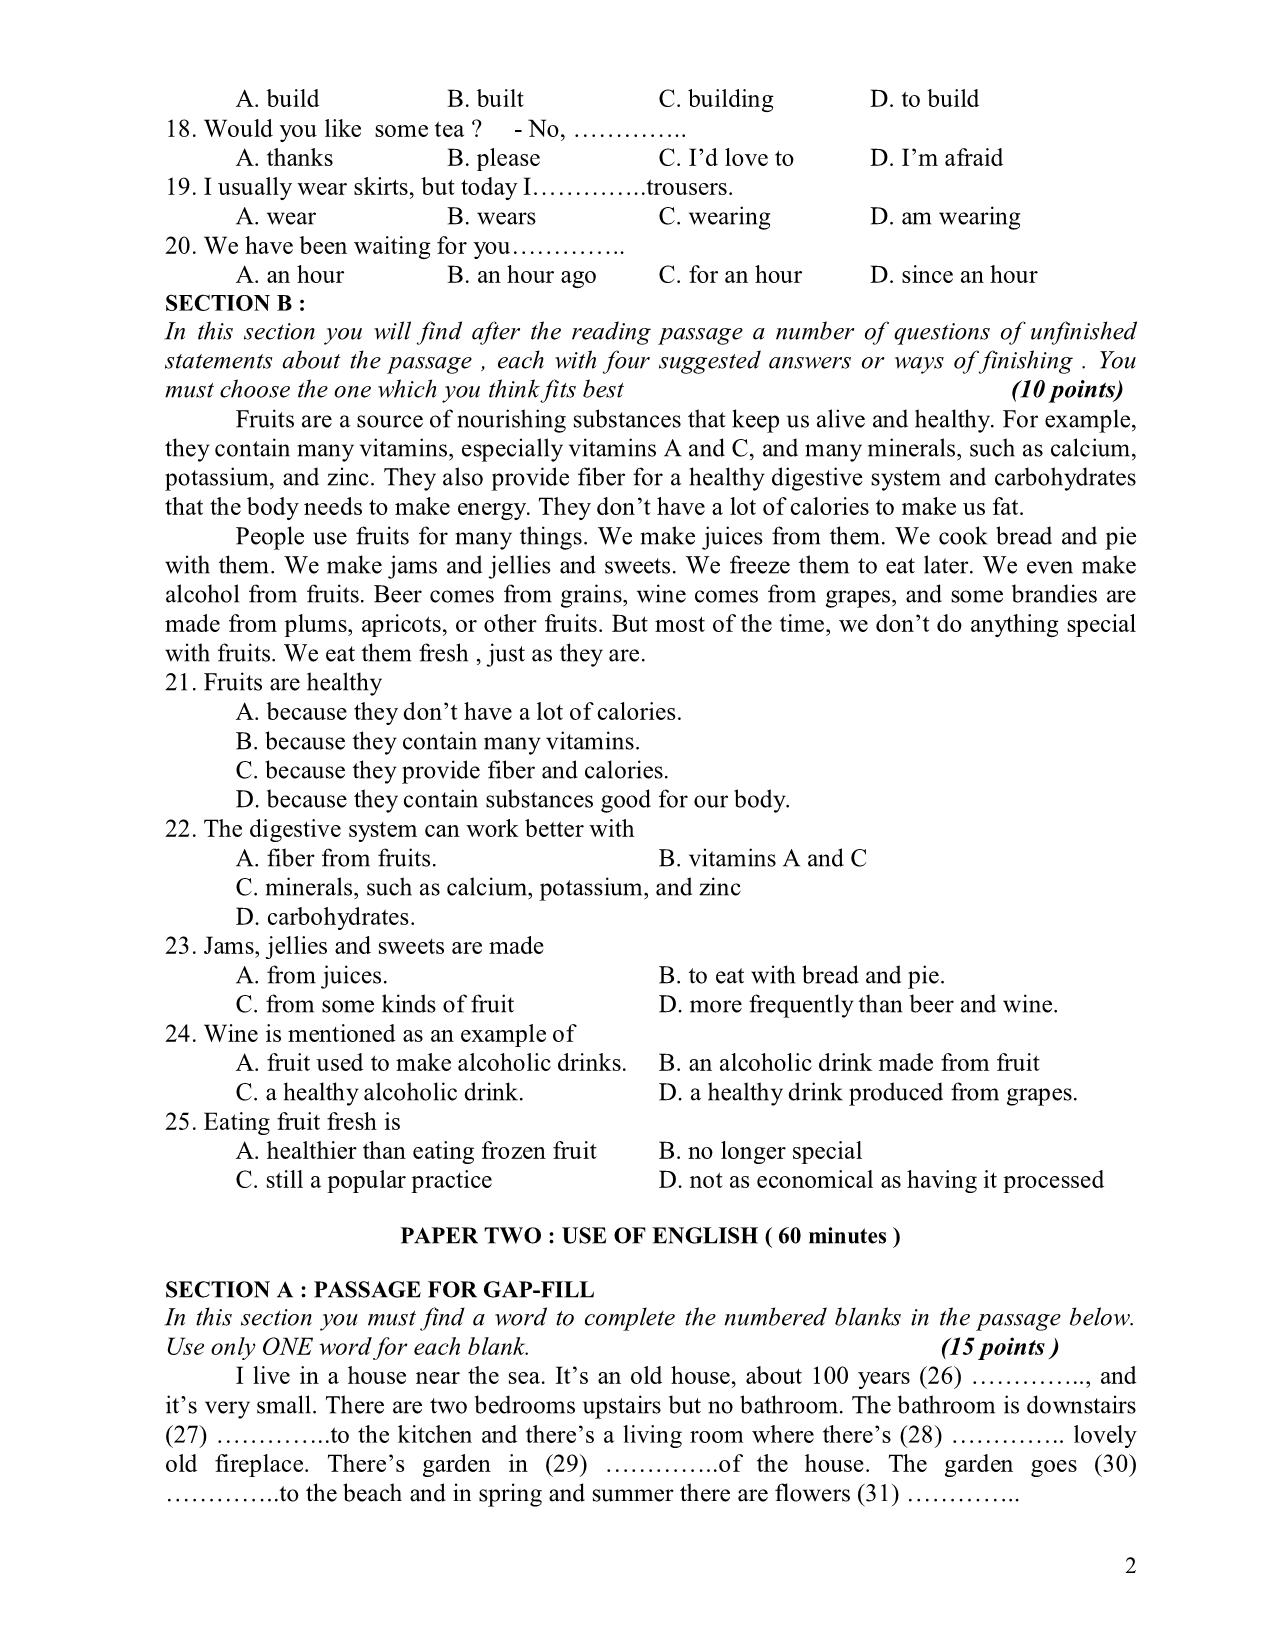 Đề thi môn viết Tiếng Anh B2 - 2008 trang 2